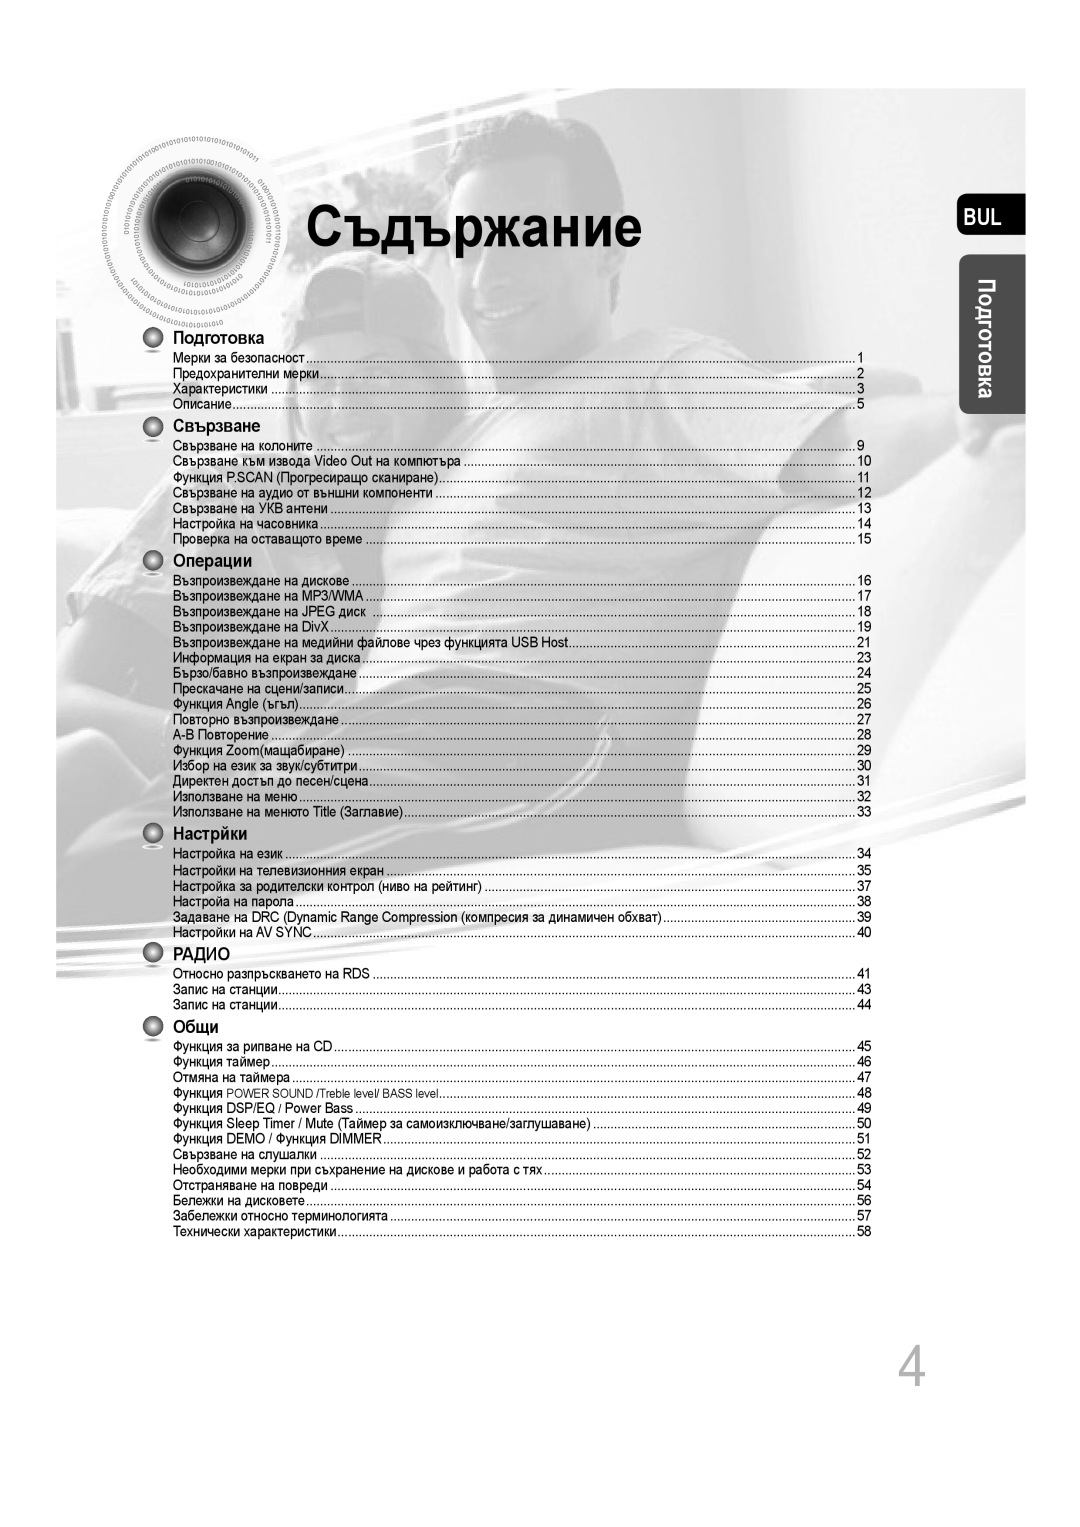 Samsung MM-C330D/EDC manual Съдържание, Подготовка, Свързване, Операции, Настрйки, Радио, Oбщи 